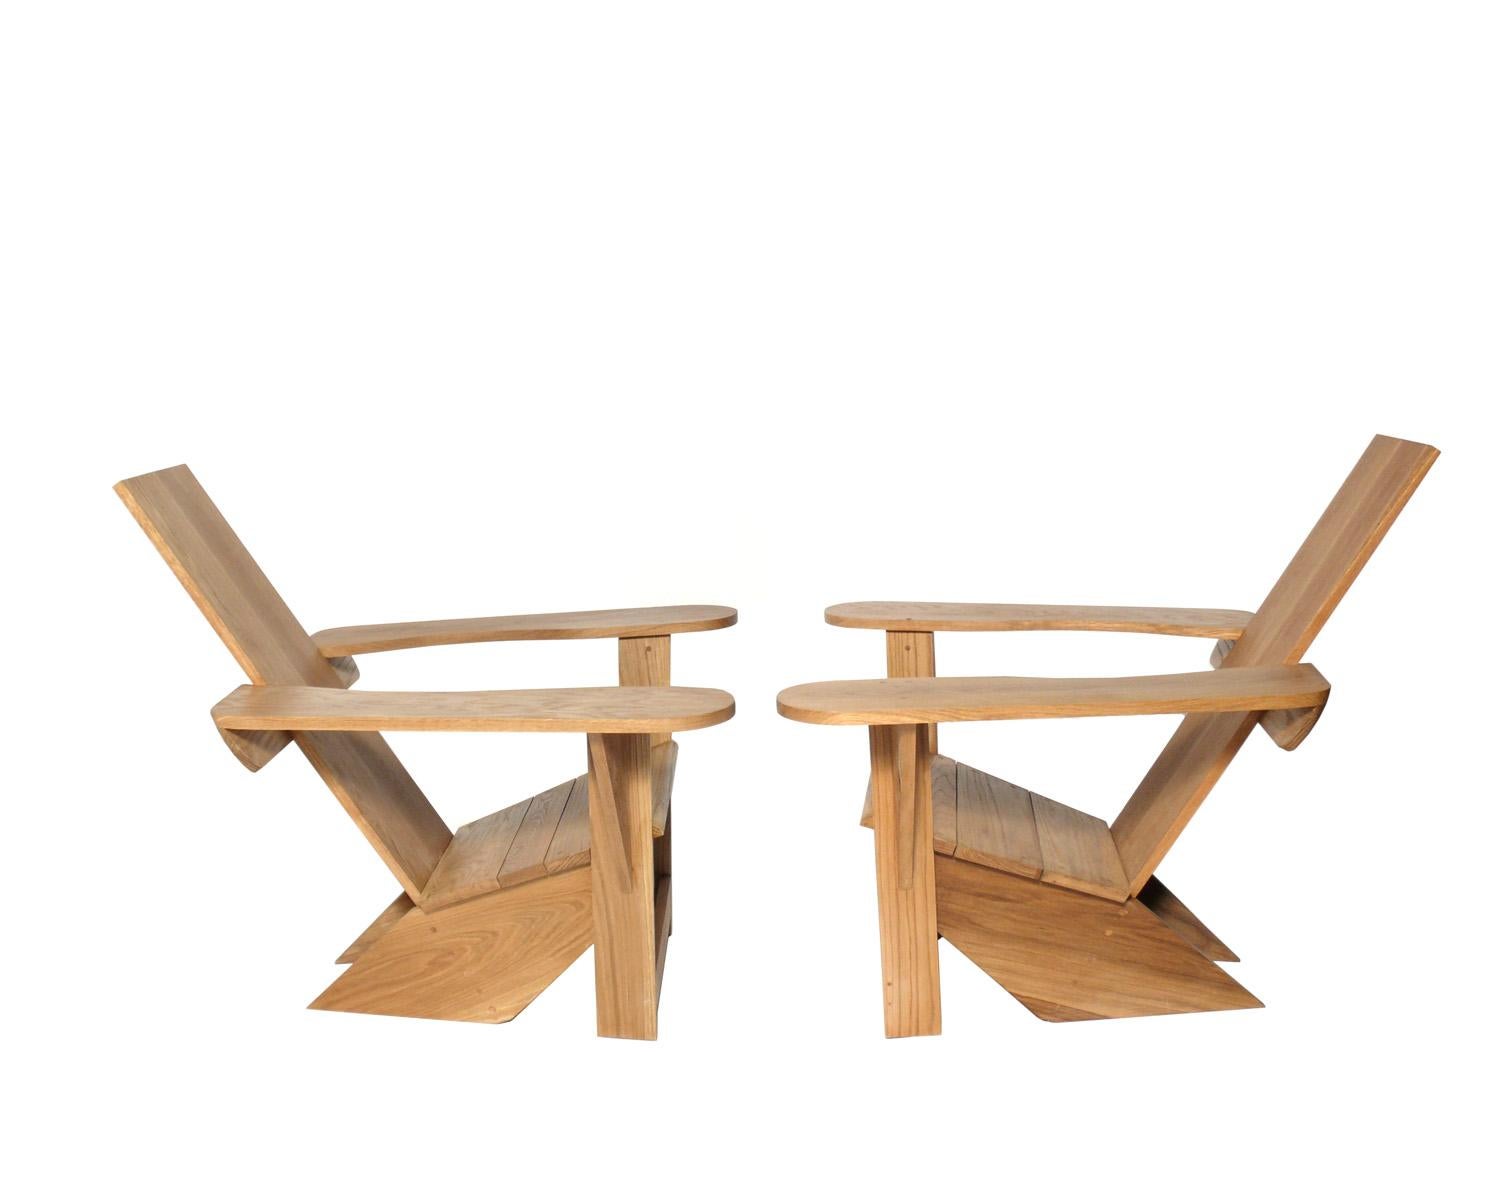 Zwei Adirondack-Stühle im Westport-Stil, ca. 2000er Jahre. Wir haben diese Stühle für einen Kunden nach dem Vorbild des Westport-Stuhls angefertigt, der ursprünglich 1903 von Thomas Lee für sein Sommerhaus in Westport, NY, entworfen und später von